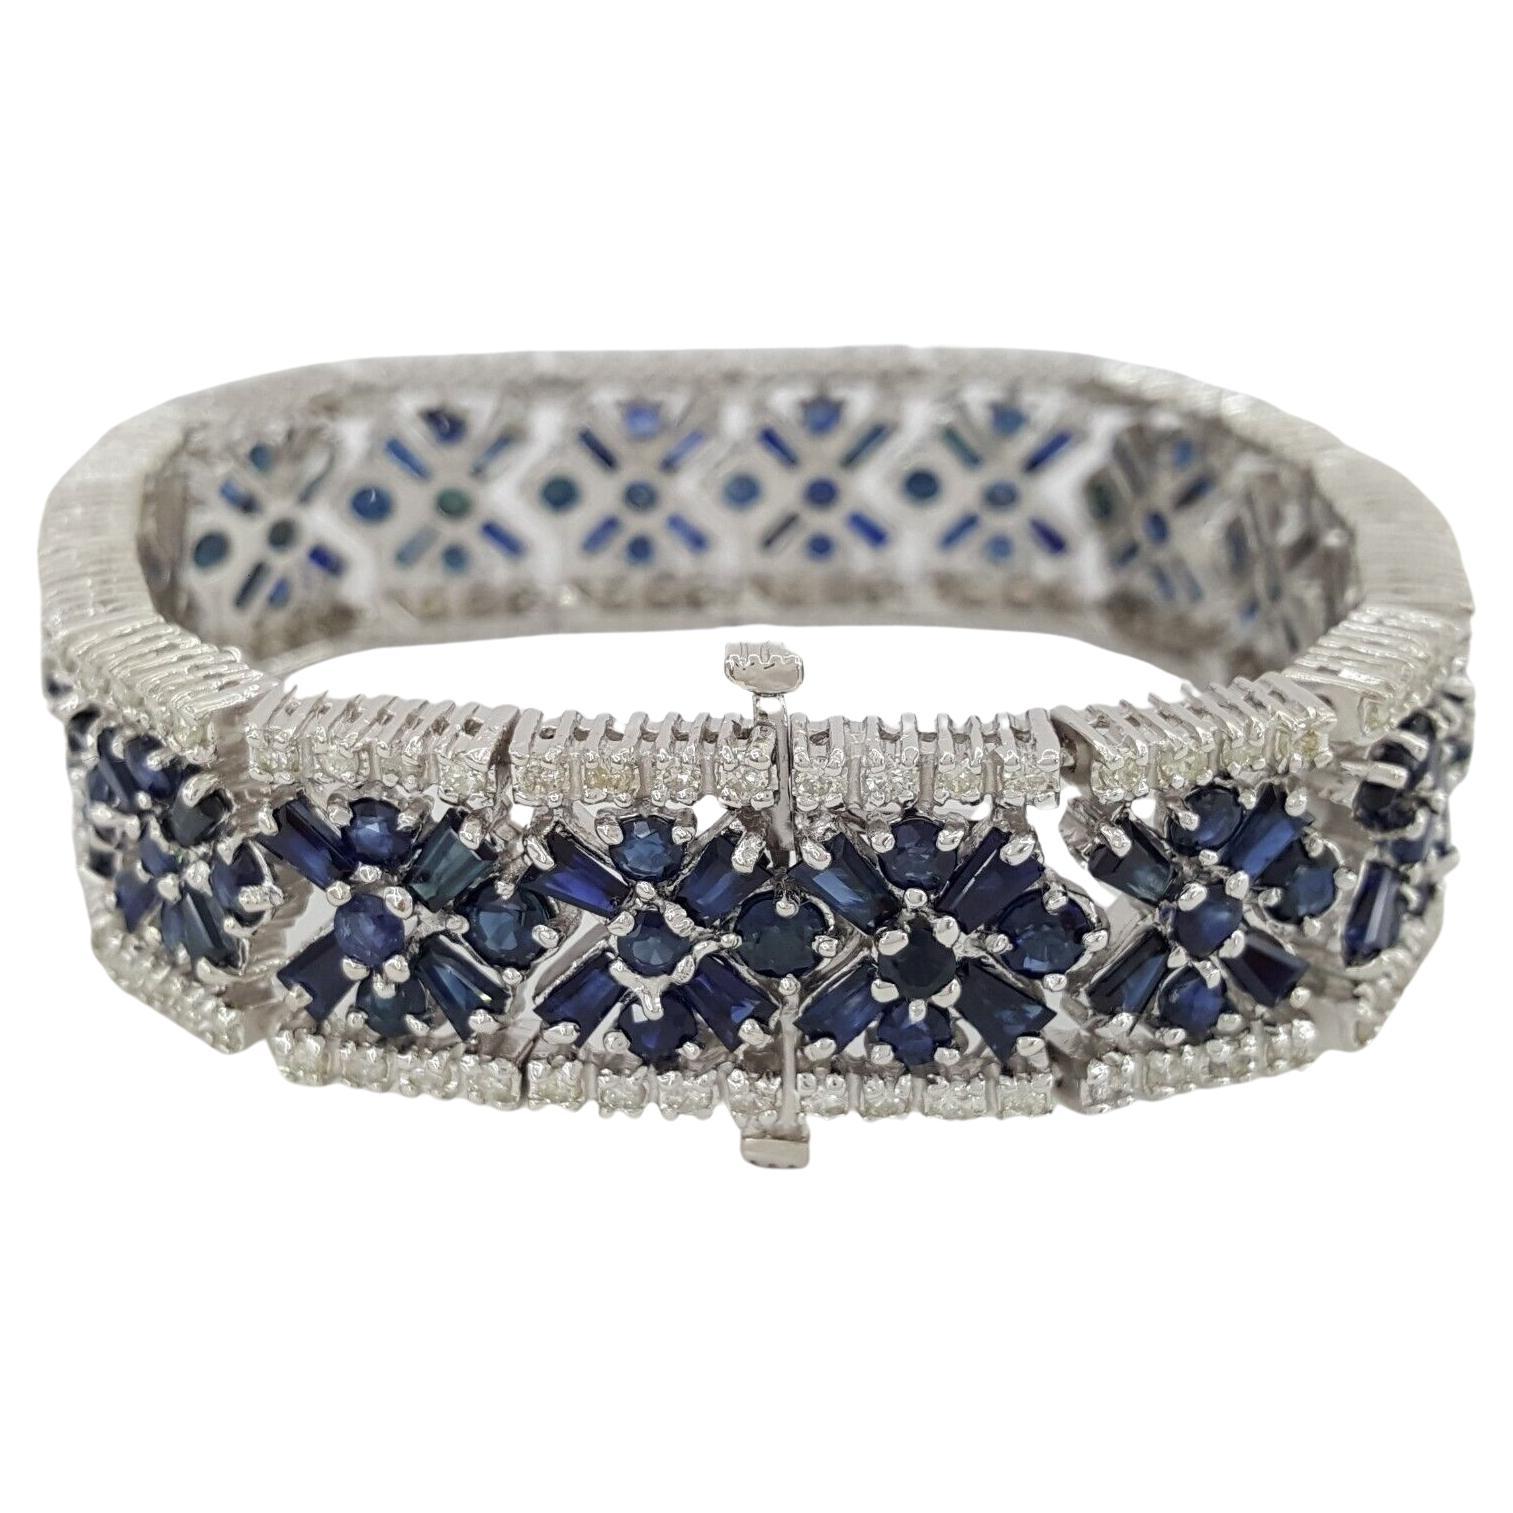  24.6 carats Round Brilliant Cut Diamonds Blue Sapphires Bracelet 